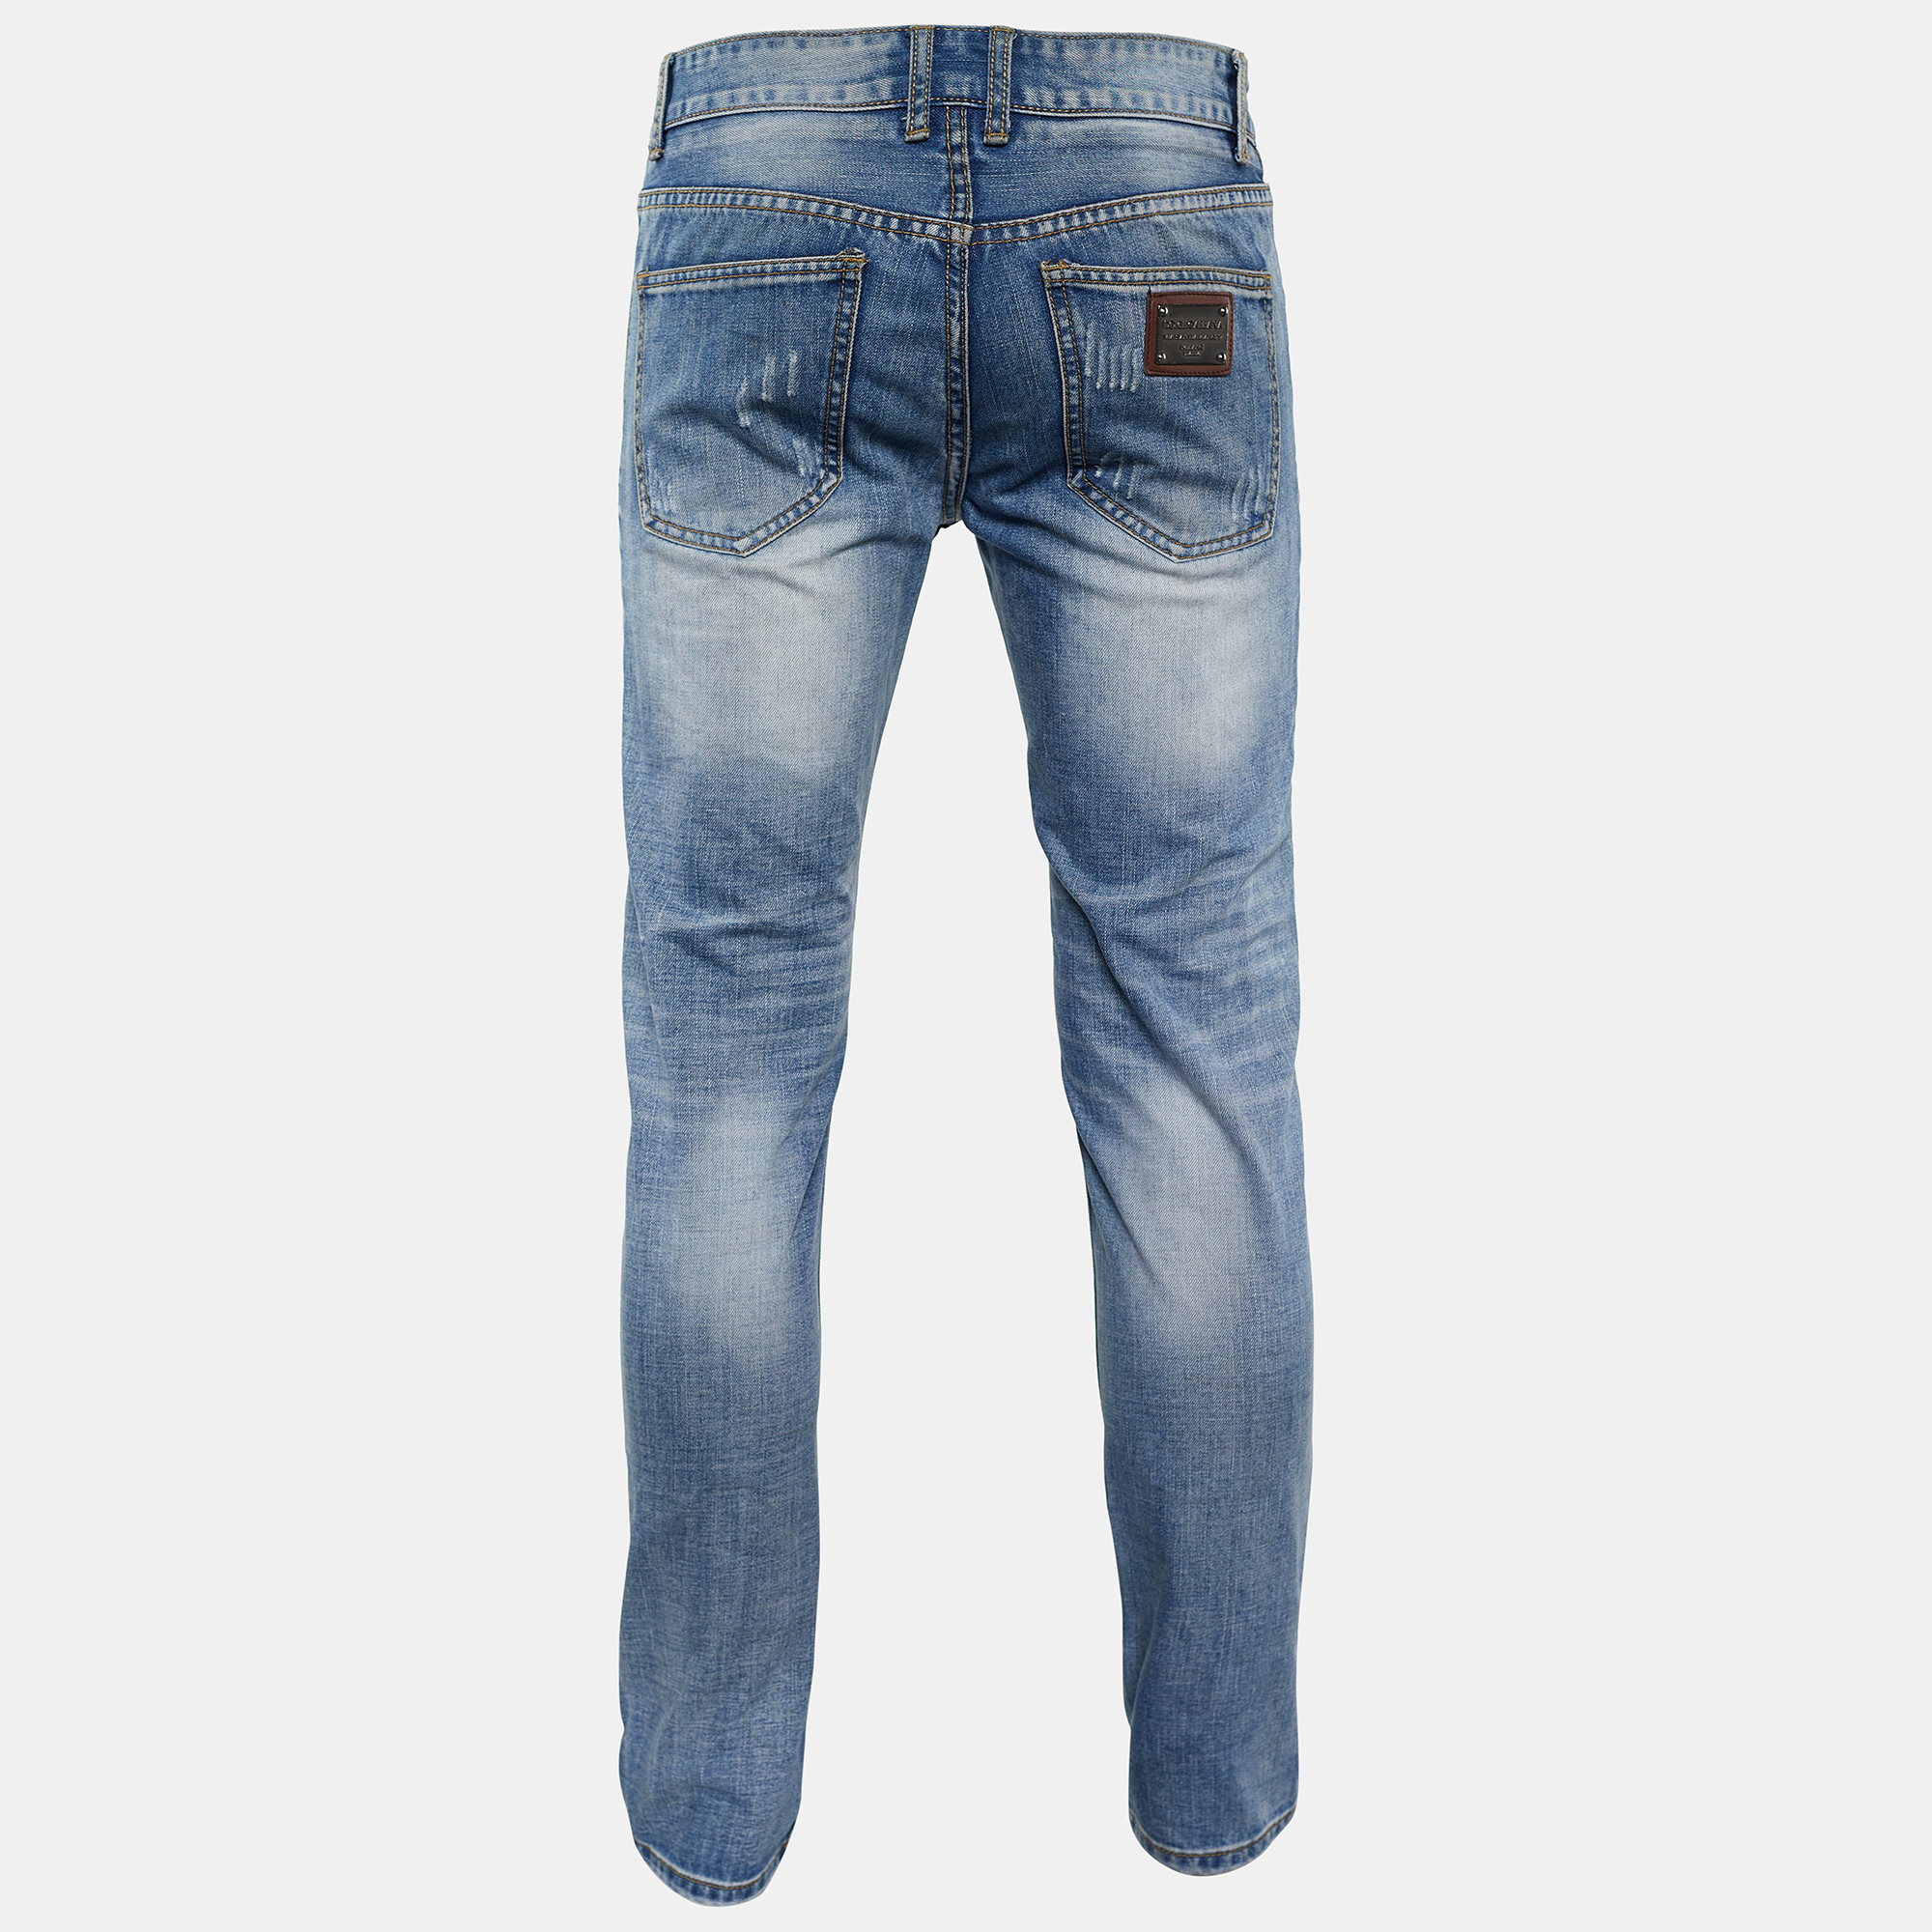 

Dolce & Gabbana 14 Class Blue Washed Denim Regular Fit Jeans /Waist 33